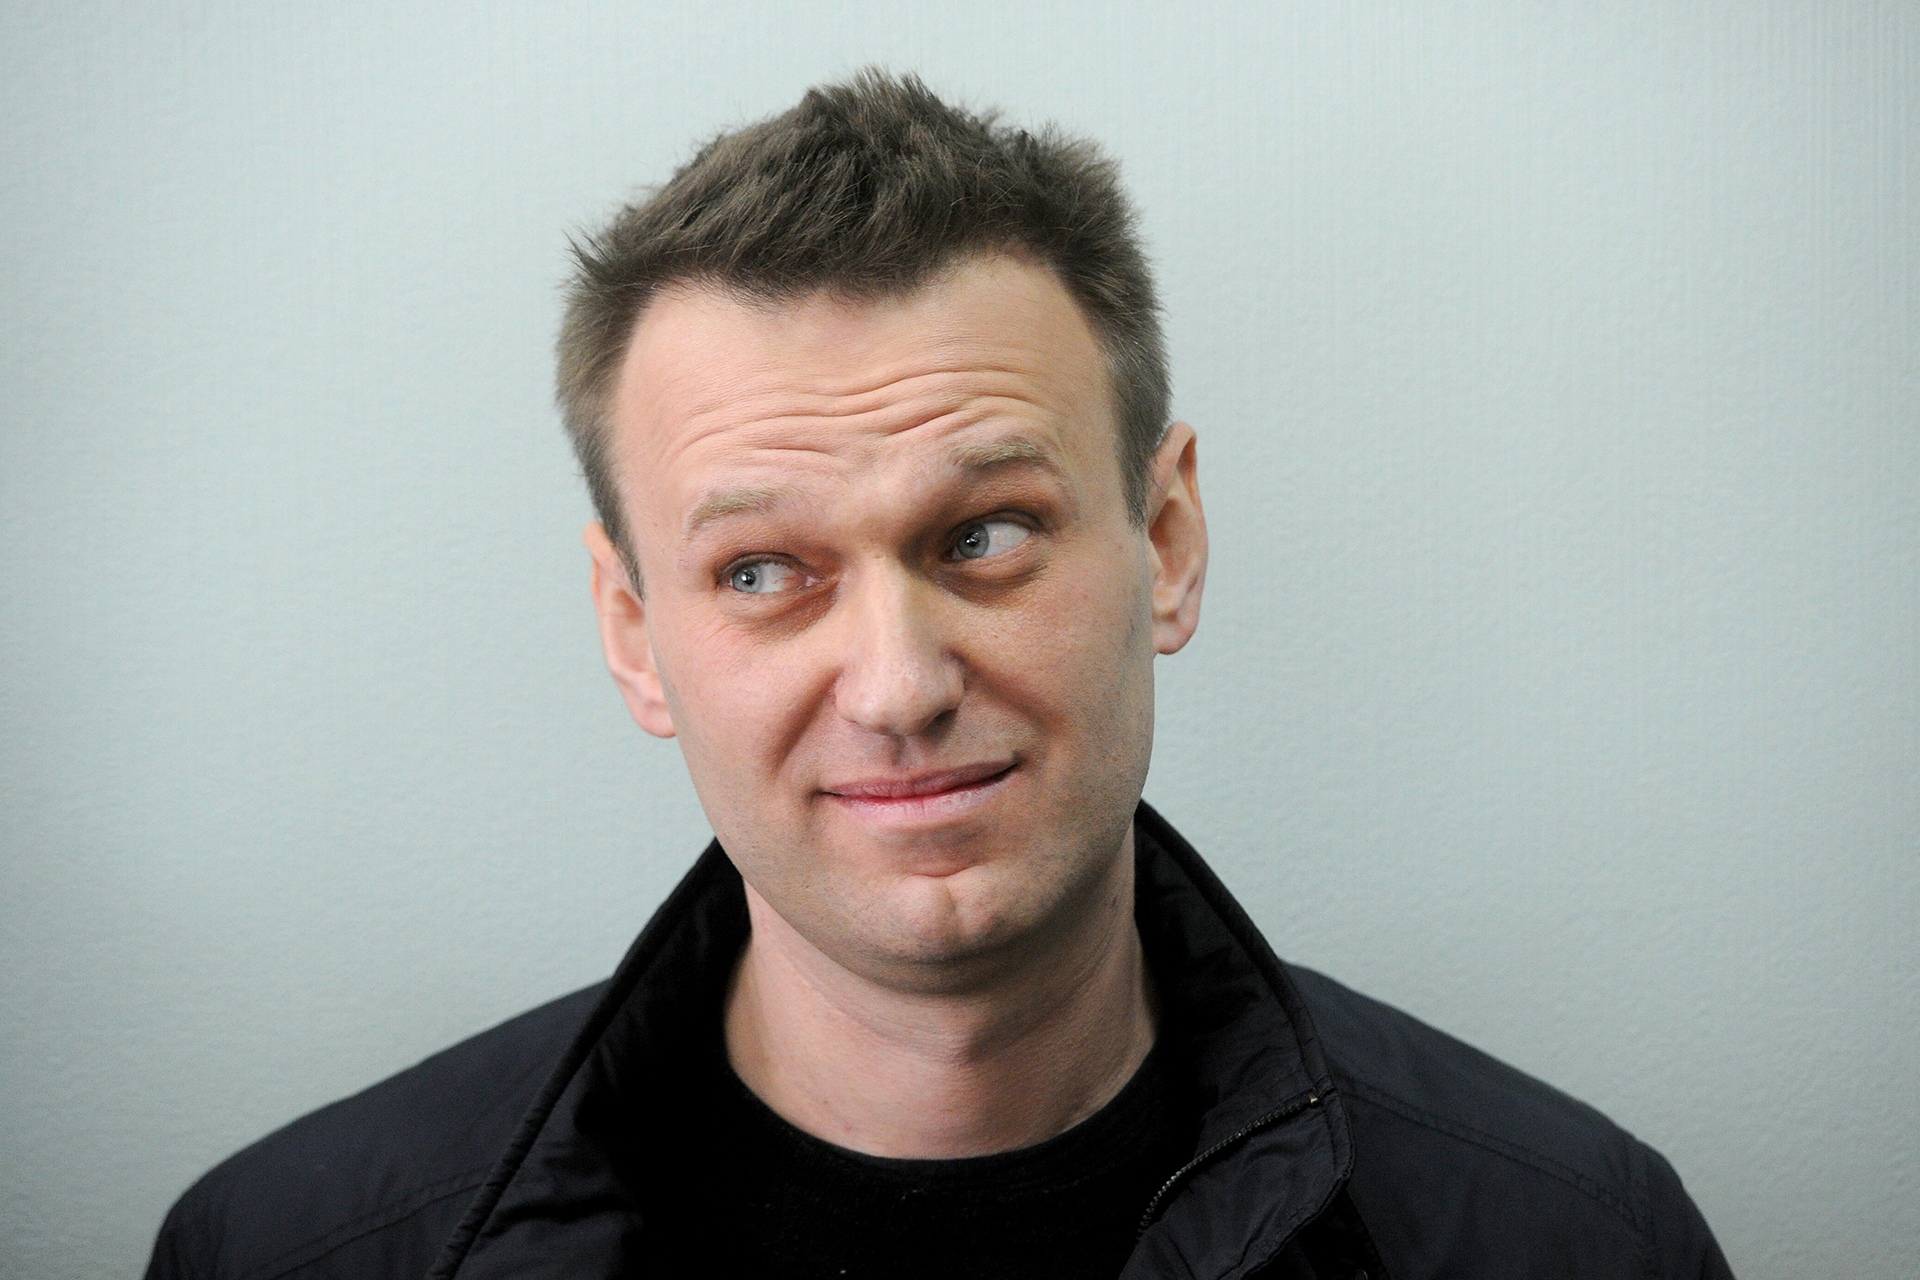 Алексея Навального внесли в список террористов и экстремистов. Теперь нельзя ему донатить и упоминать его в соцсетях?